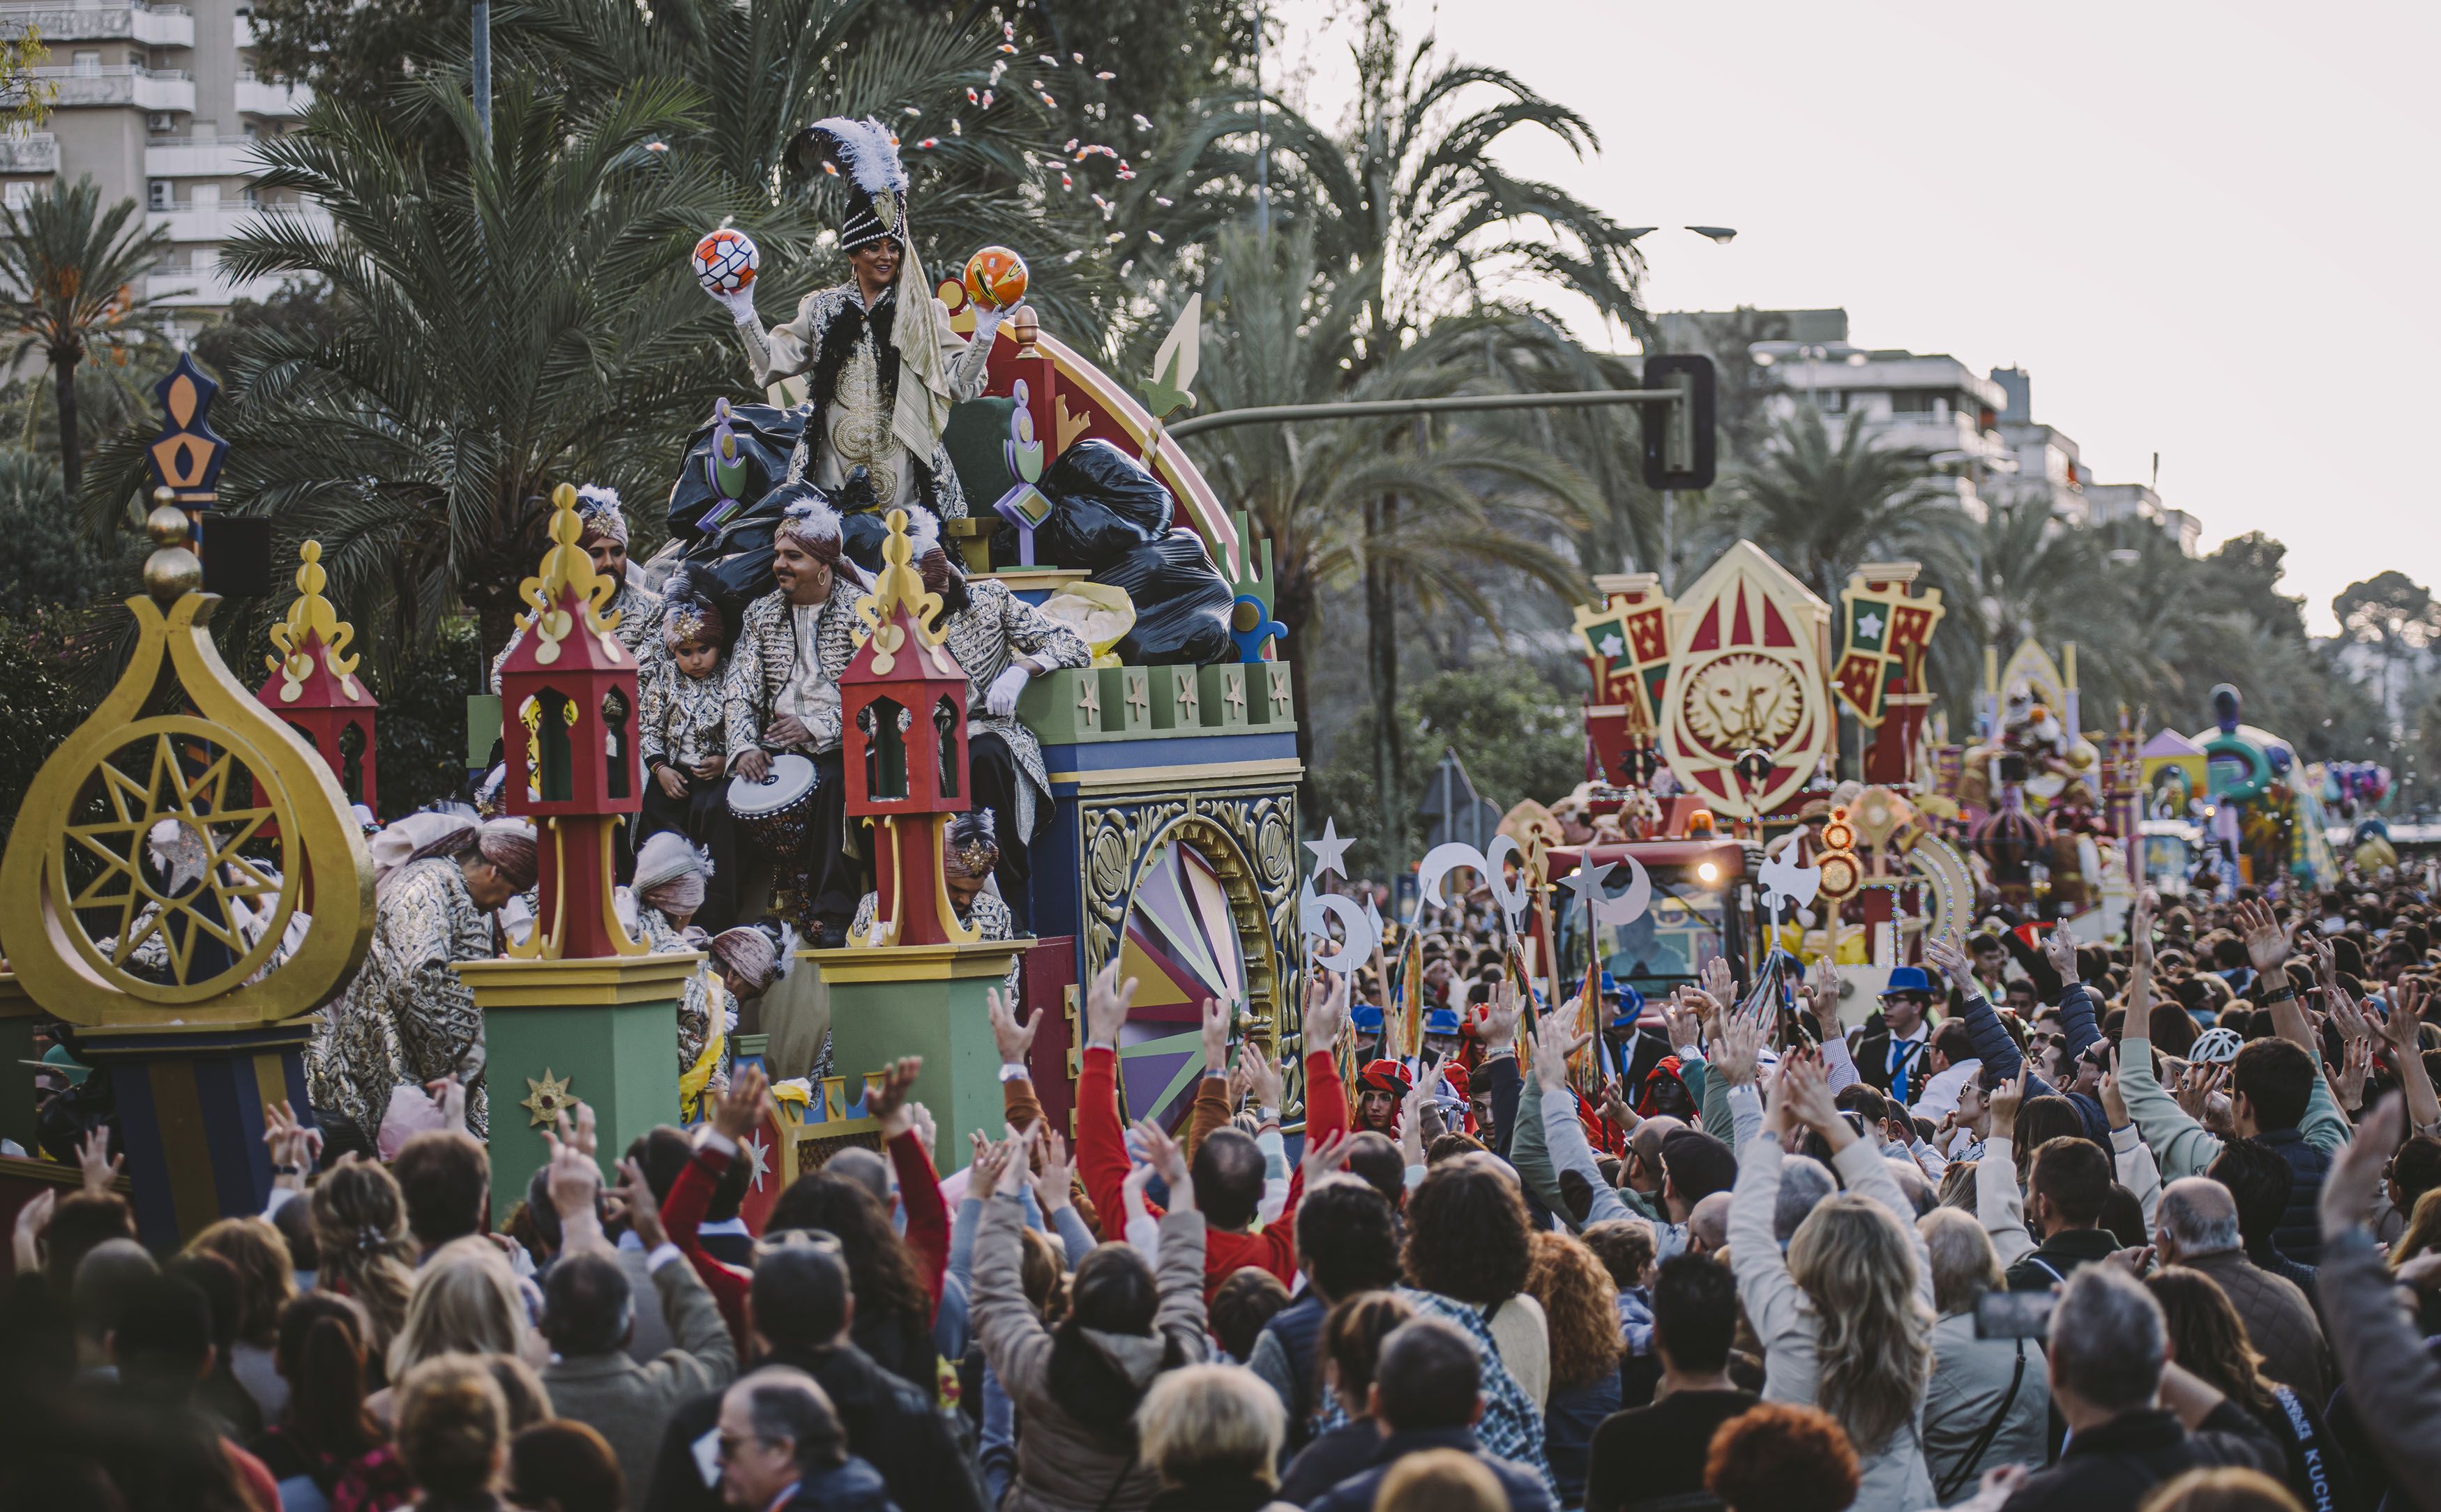 La cabalgata de SS.MM. Los Reyes Magos es uno de los eventos más esperados cada año en Jerez.